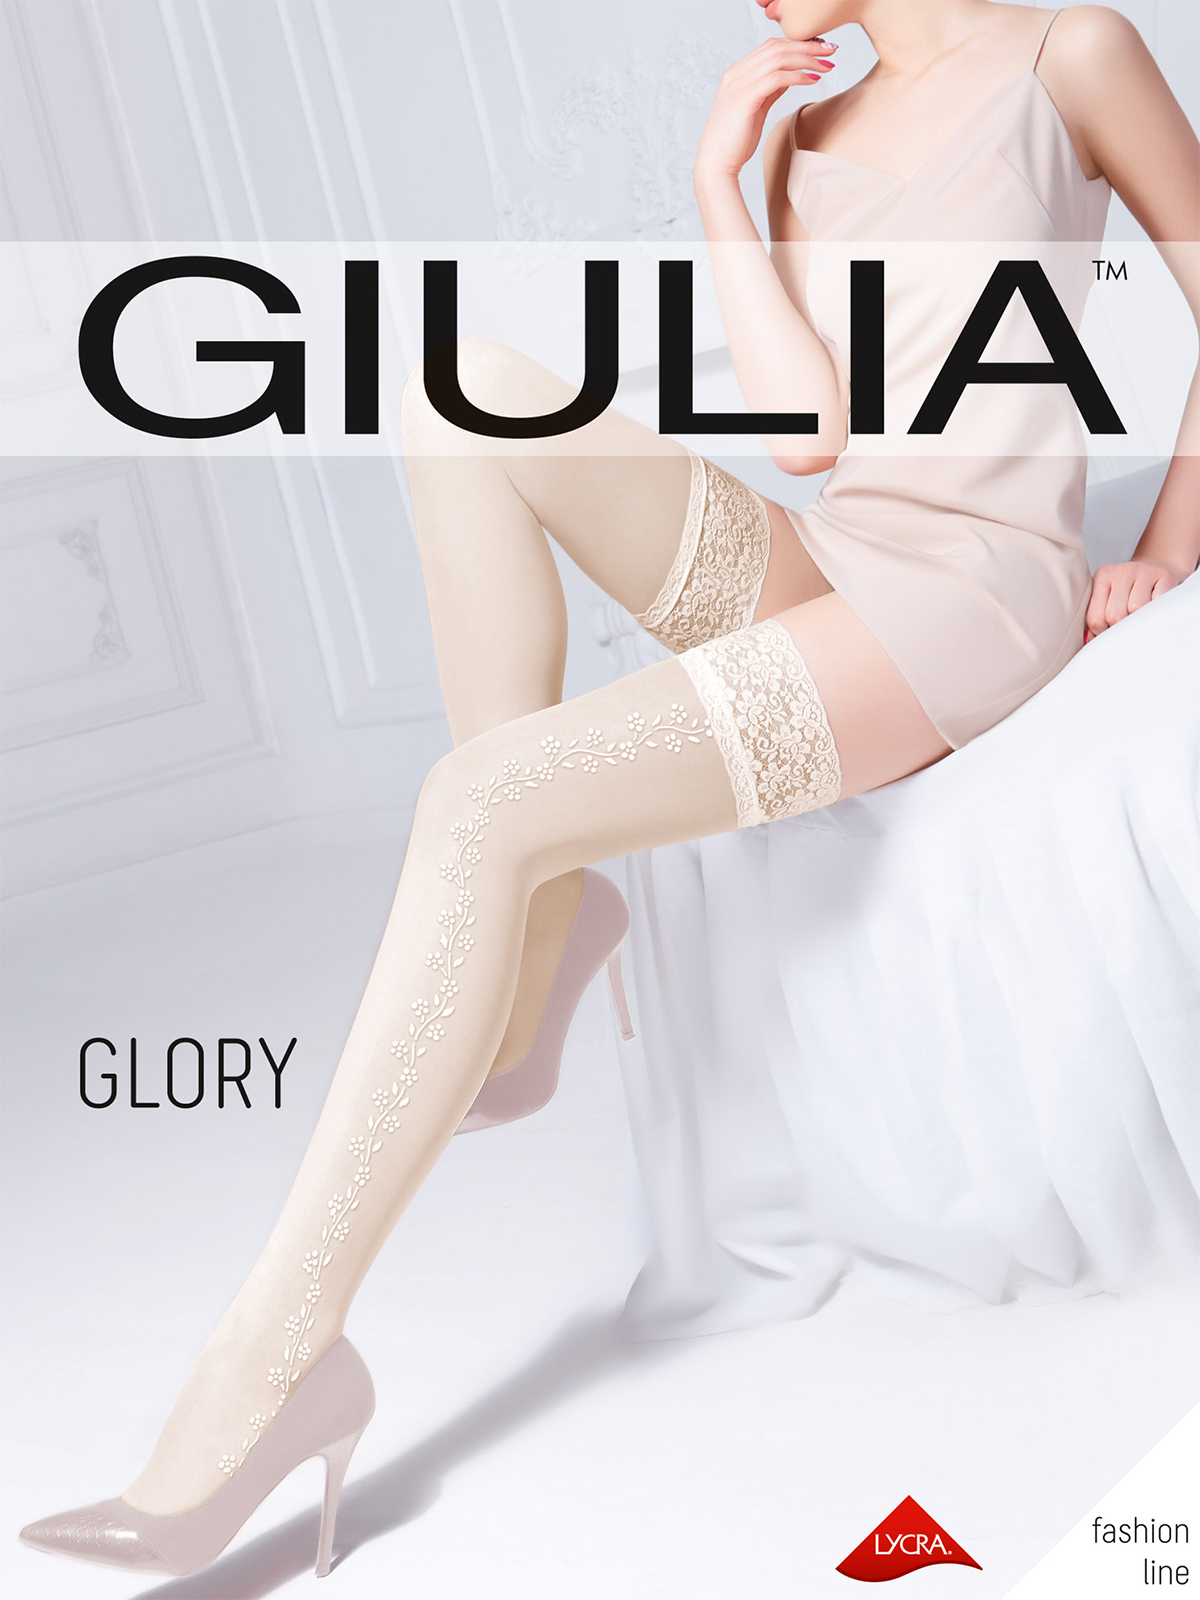 Чулки Giulia GLORY 03 льняной